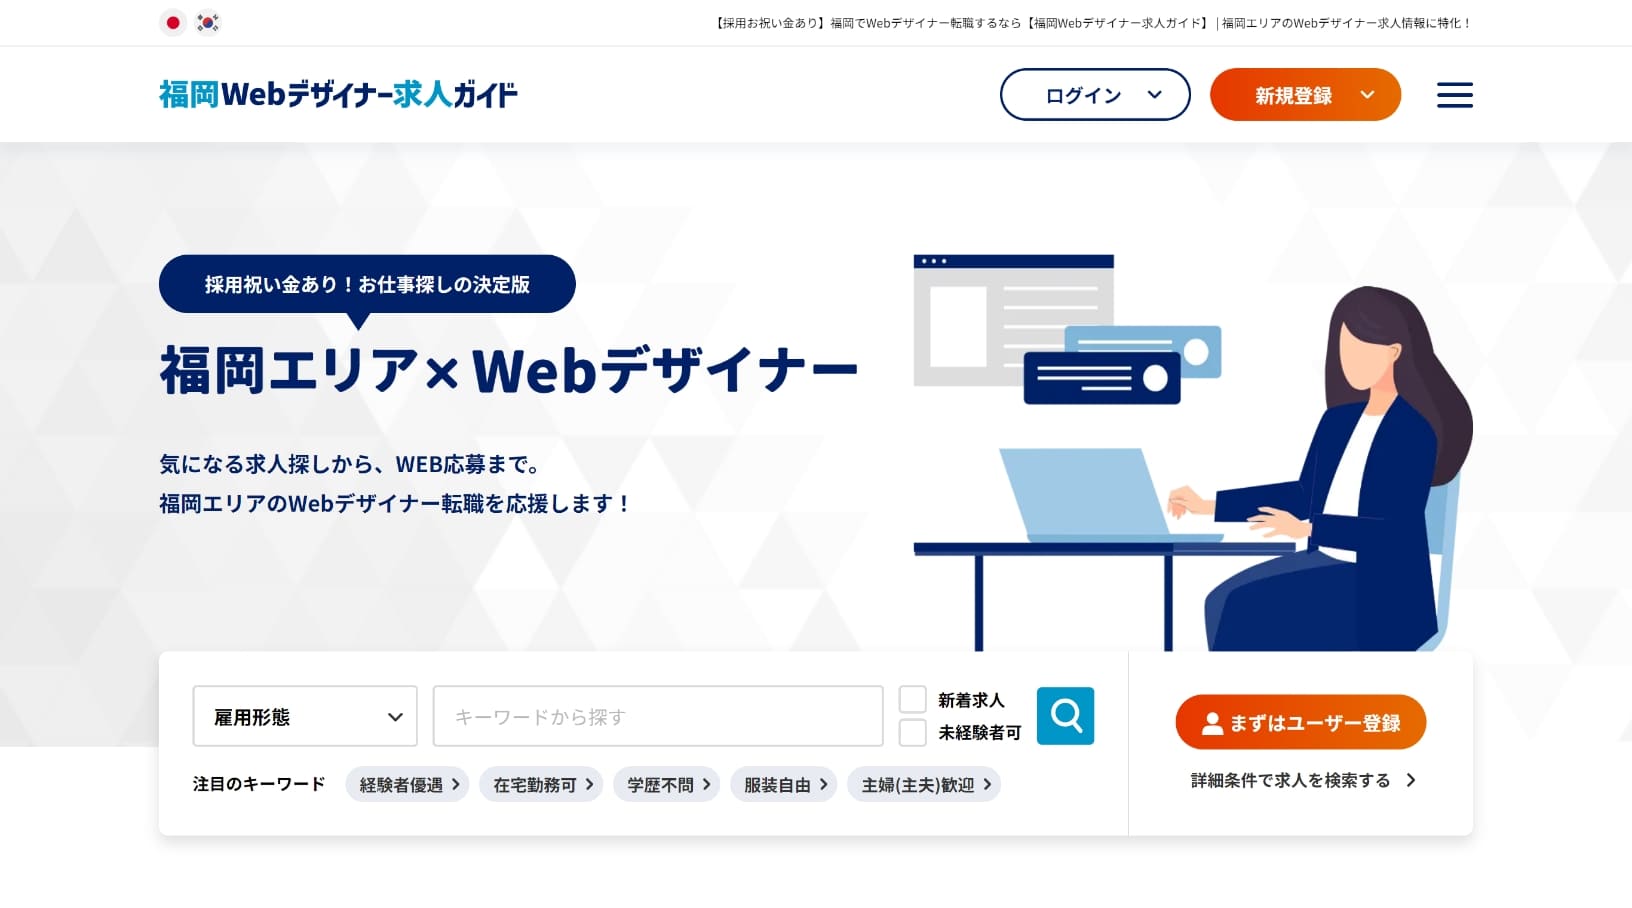 福岡Webデザイナー求人ガイド